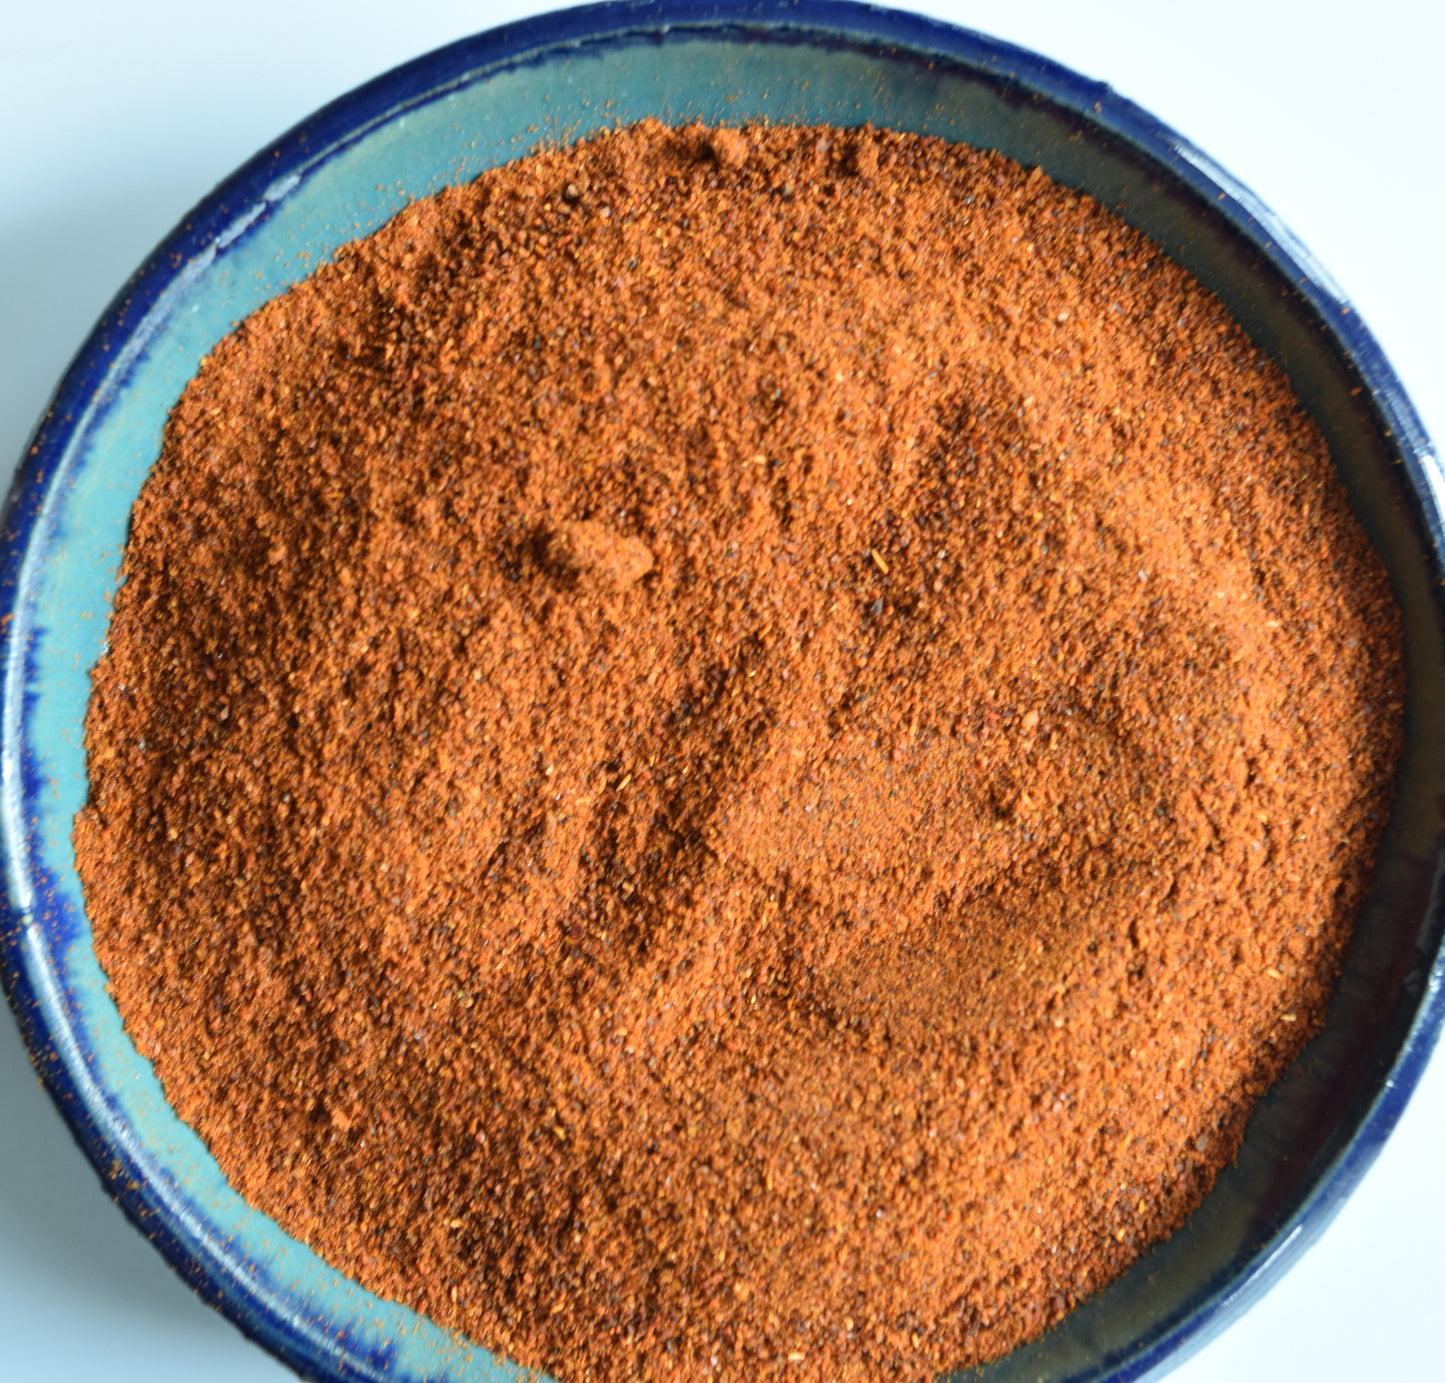 Chipotle Chile Powder